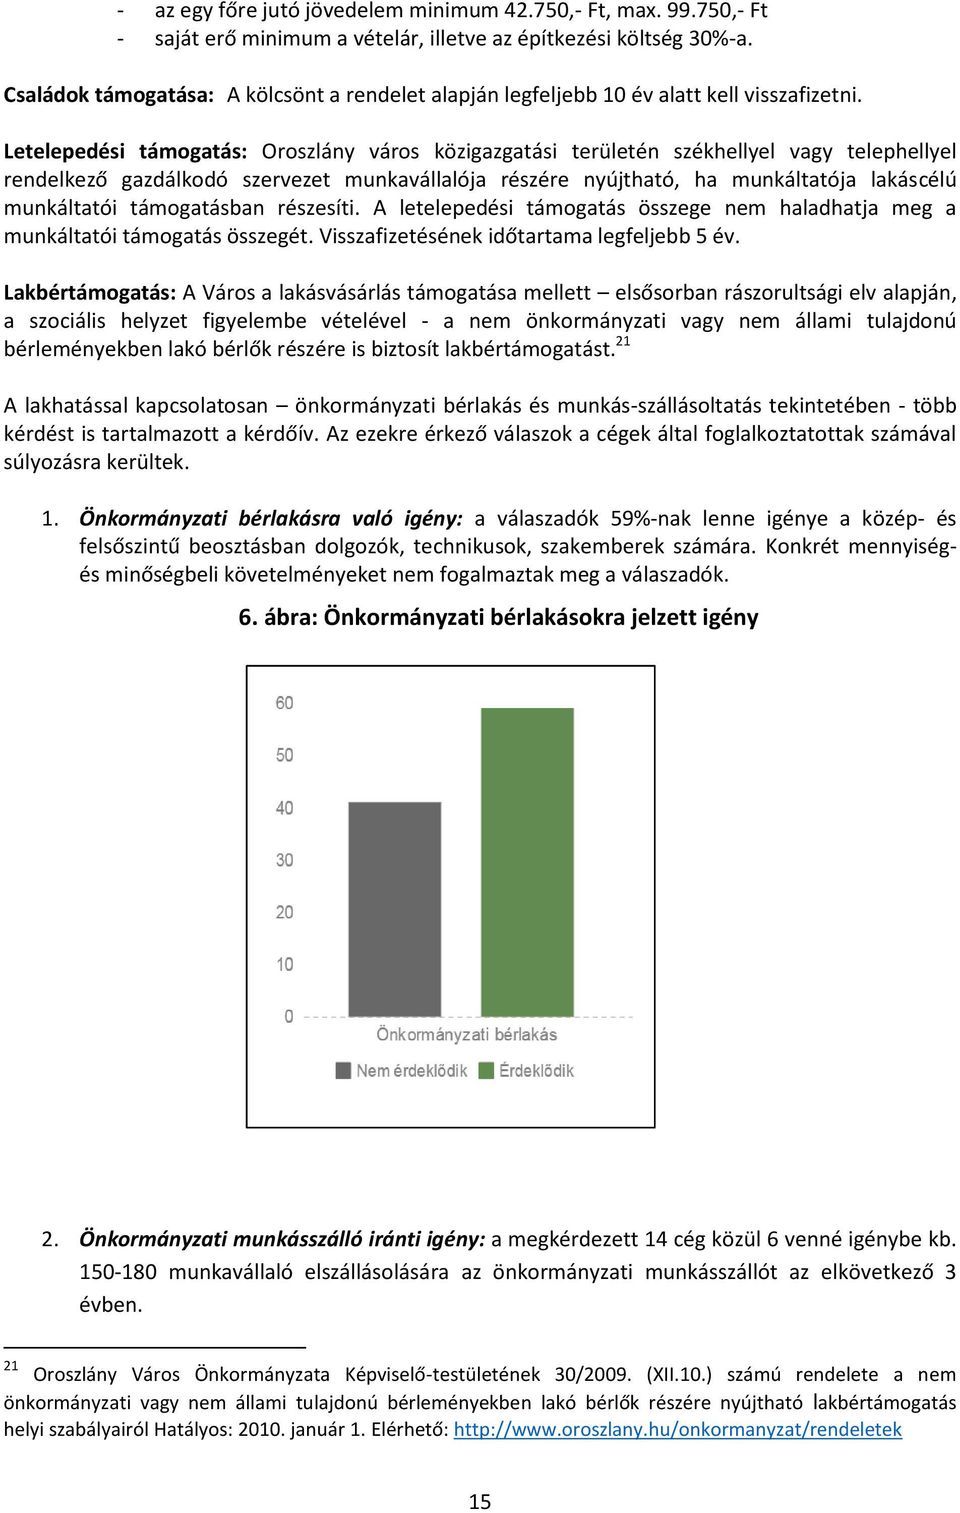 Letelepedési támogatás: Oroszlány város közigazgatási területén székhellyel vagy telephellyel rendelkező gazdálkodó szervezet munkavállalója részére nyújtható, ha munkáltatója lakáscélú munkáltatói